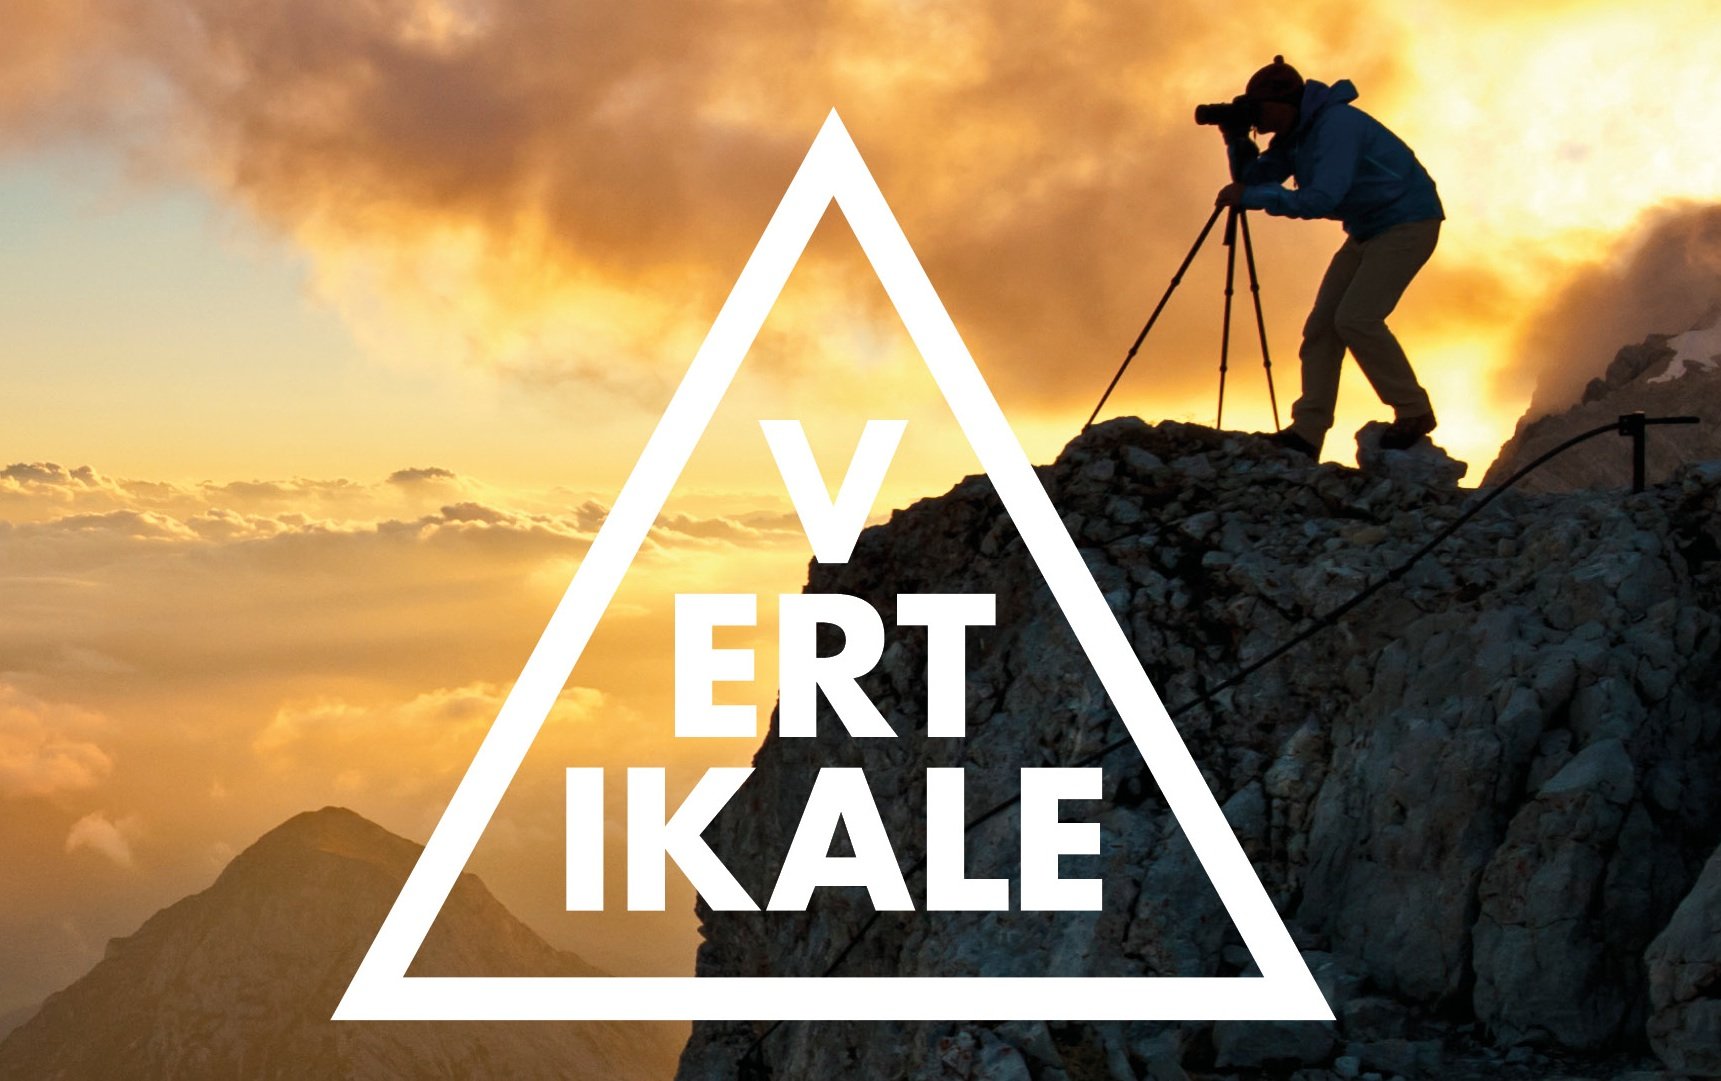 Events – VERTIKALE 2014: Alpine Elite trifft sich erstmals beim Bergsport-Festival in Schladming/Dachstein